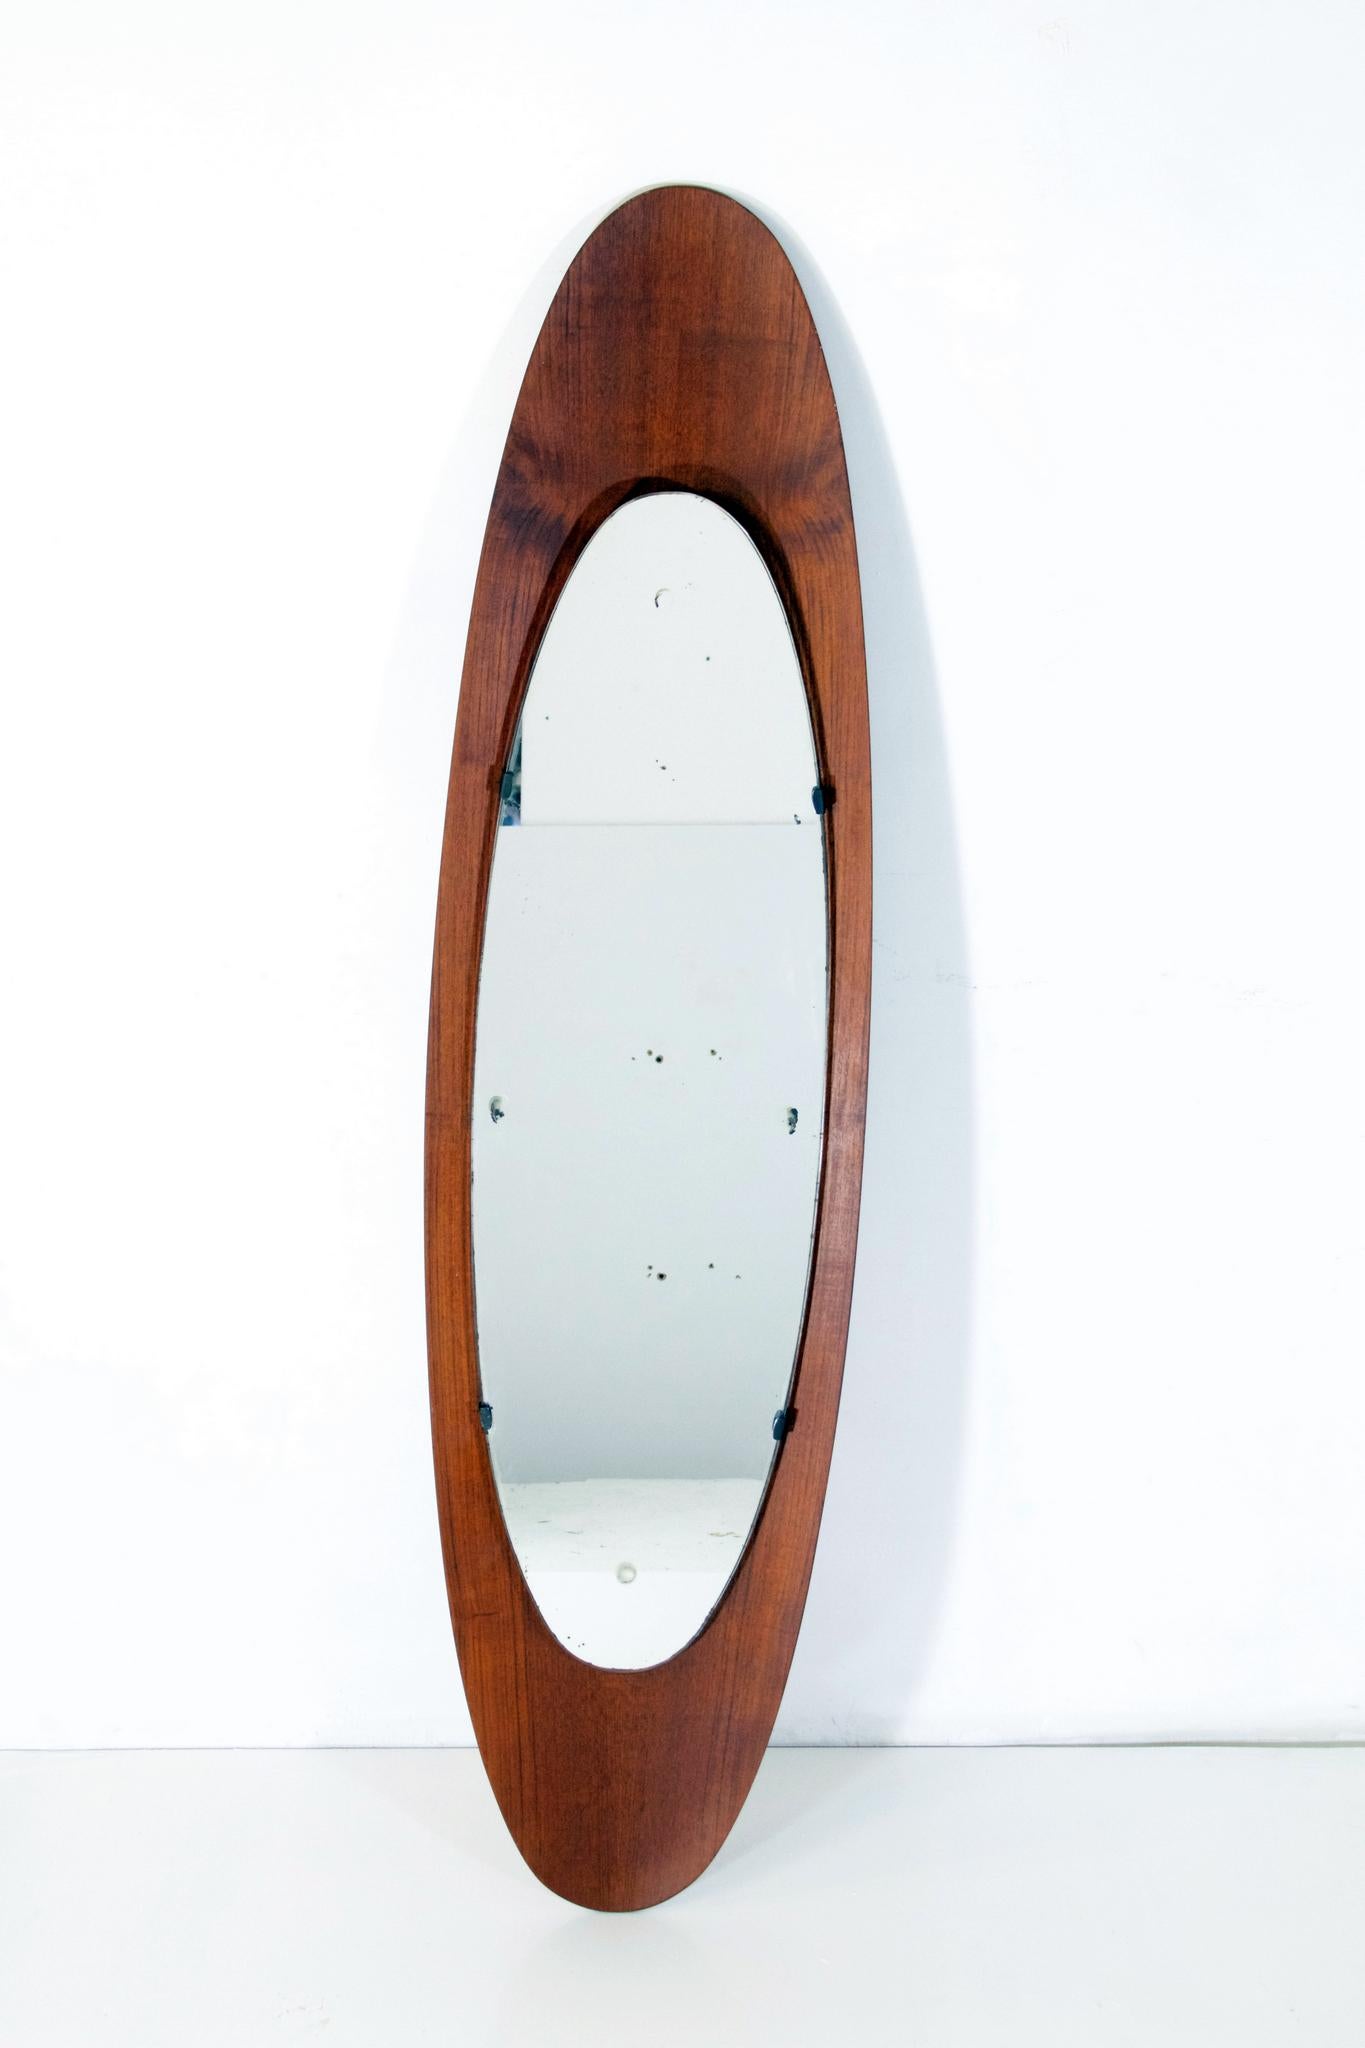 Originaler ovaler Spiegel des italienischen Duos Campo e Graffi. Das Originalglas hat eine Verfärbung siehe Bild. Ansonsten können sie bei Bedarf leicht ersetzt werden.